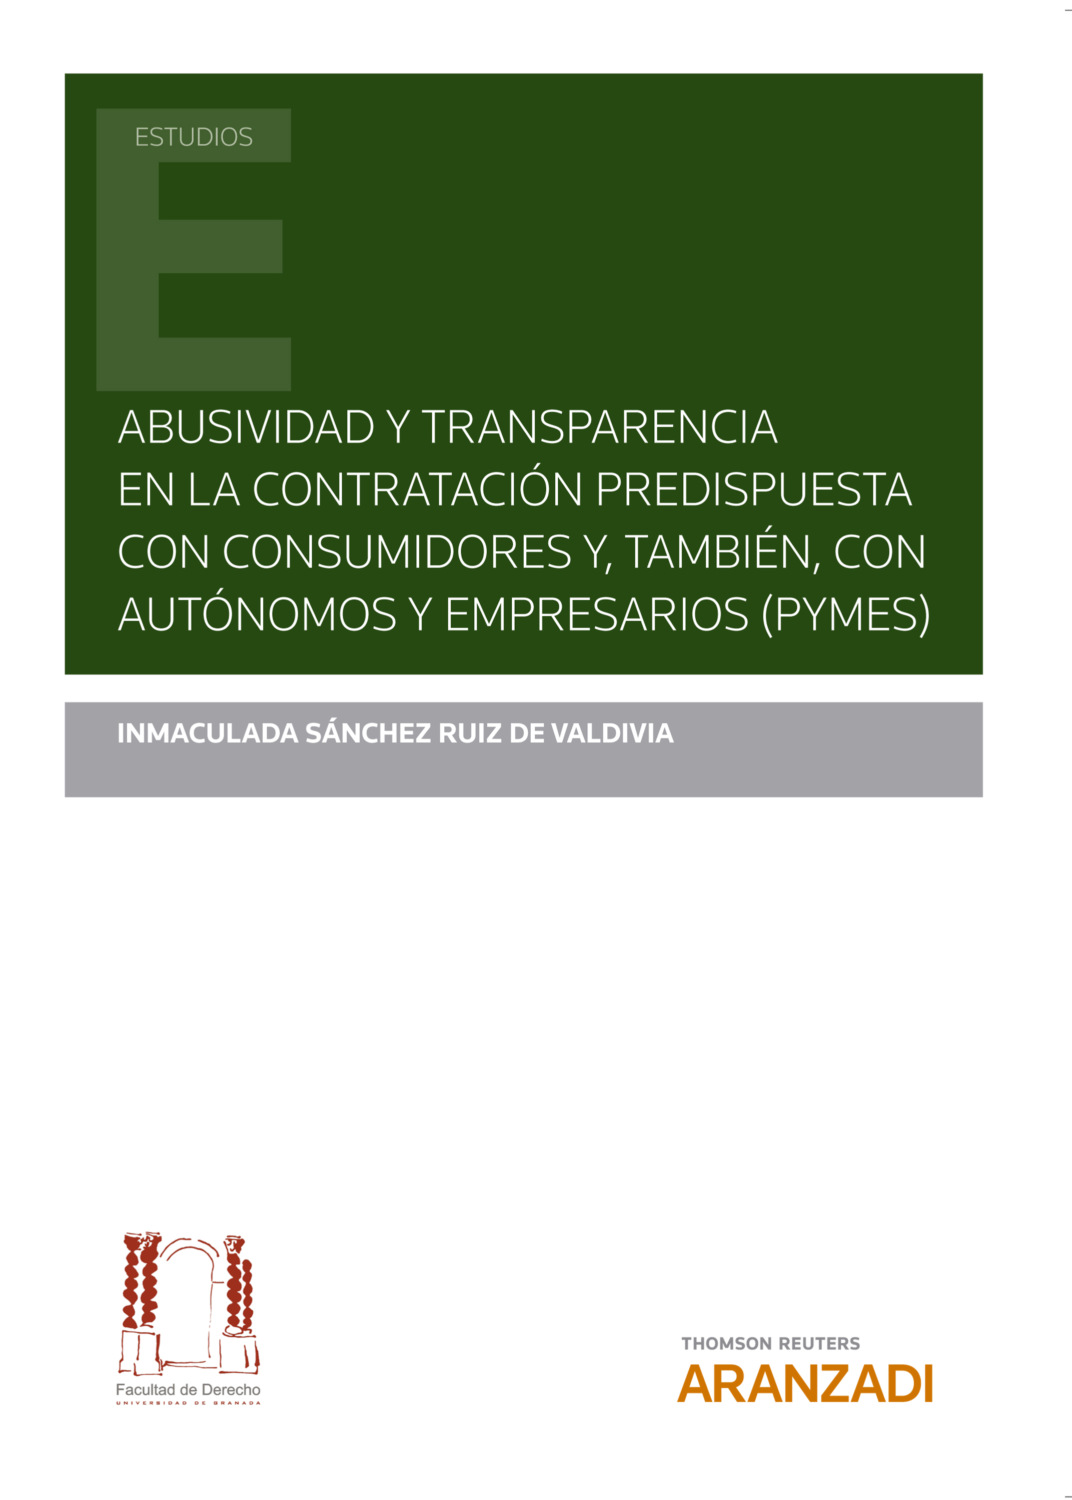 Imagen de portada del libro Abusividad y transparencia en la contratación predispuesta con consumidores y, también, con autónomos y empresarios (PYMES)